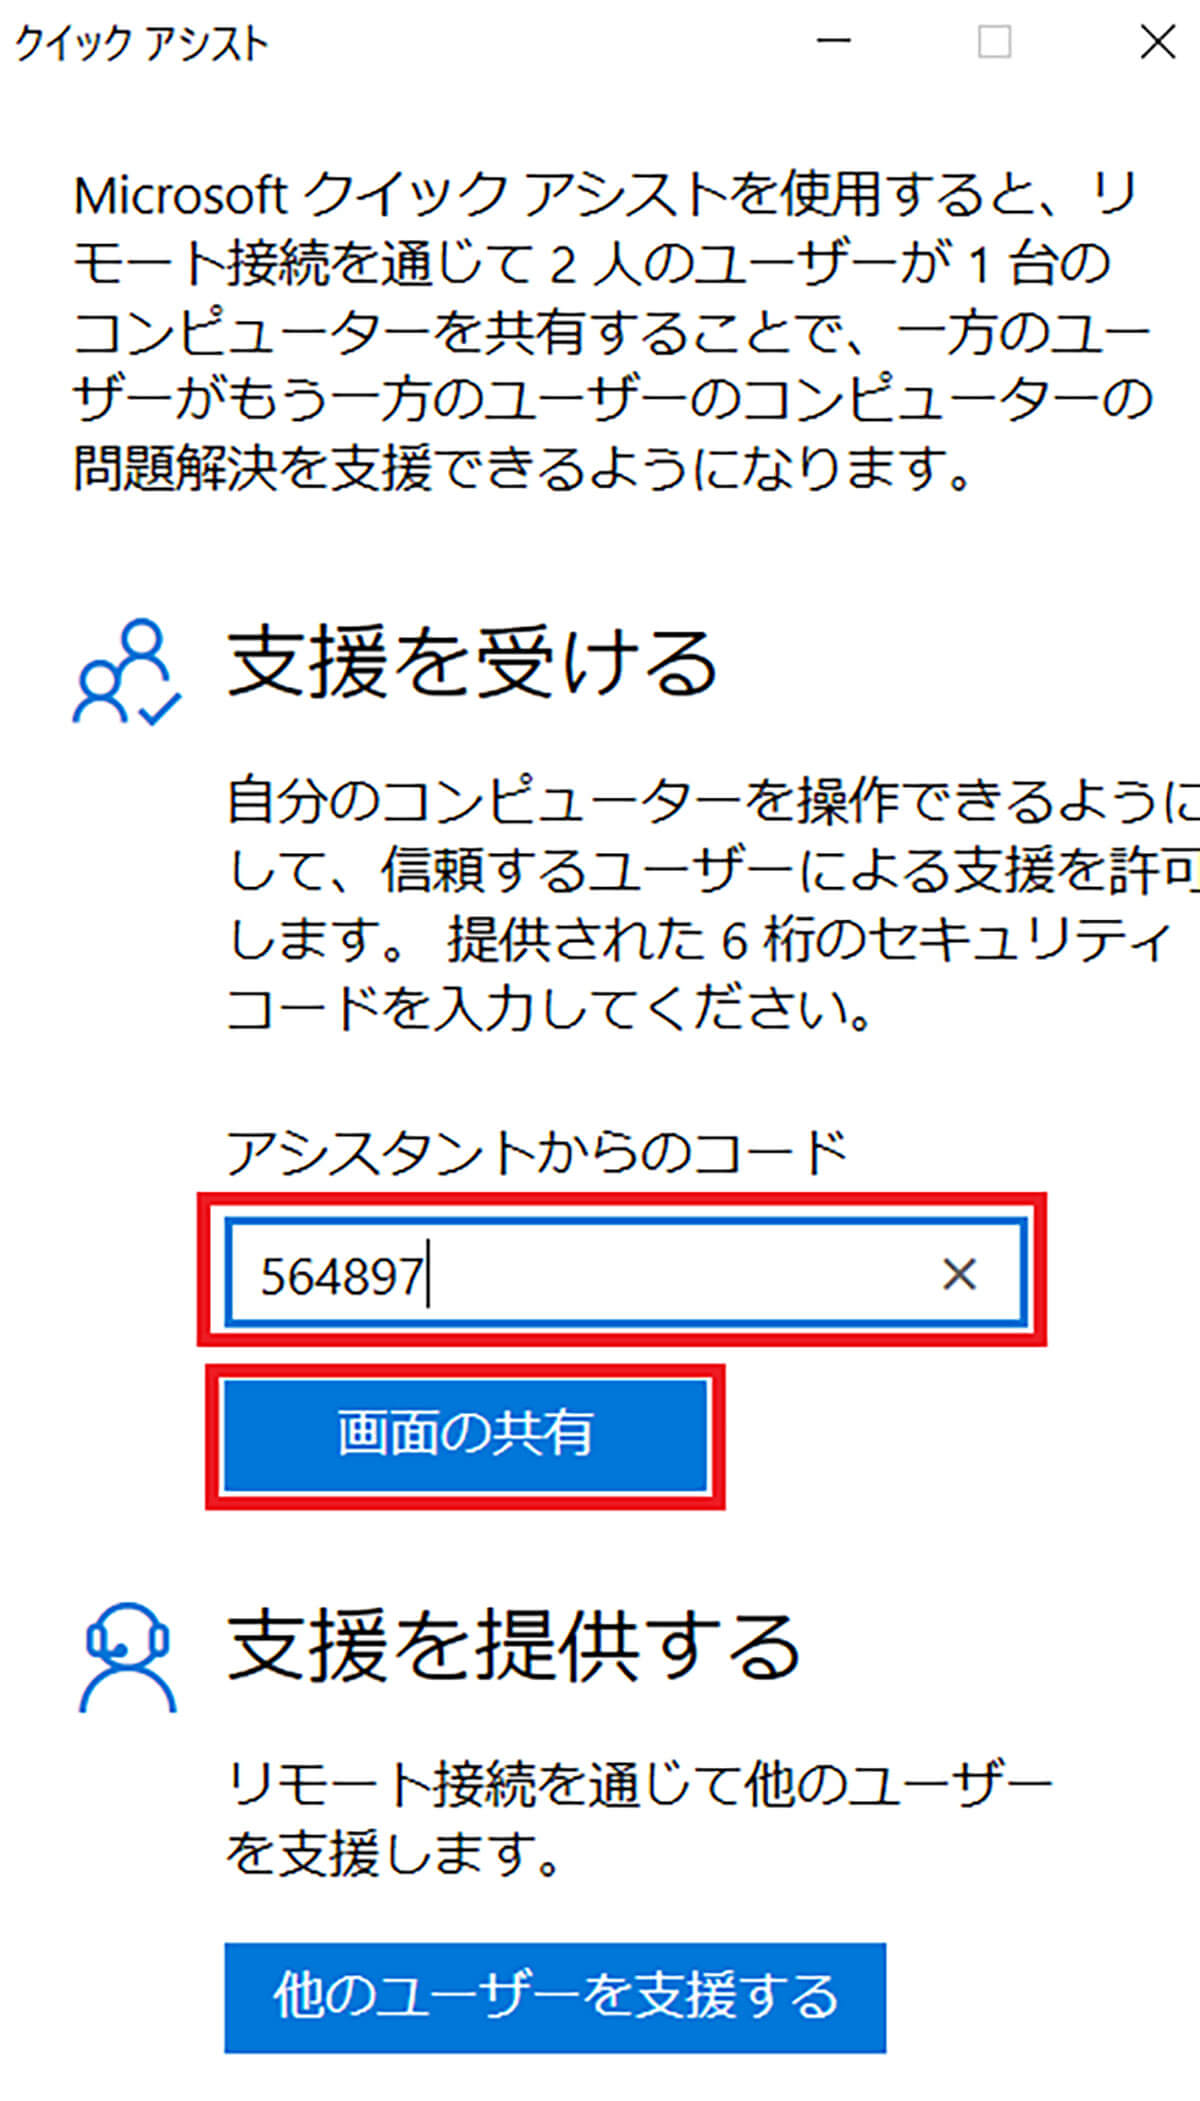 Windows 10の「クイックアシスト」でPCを遠隔操作する方法【支援される側】1